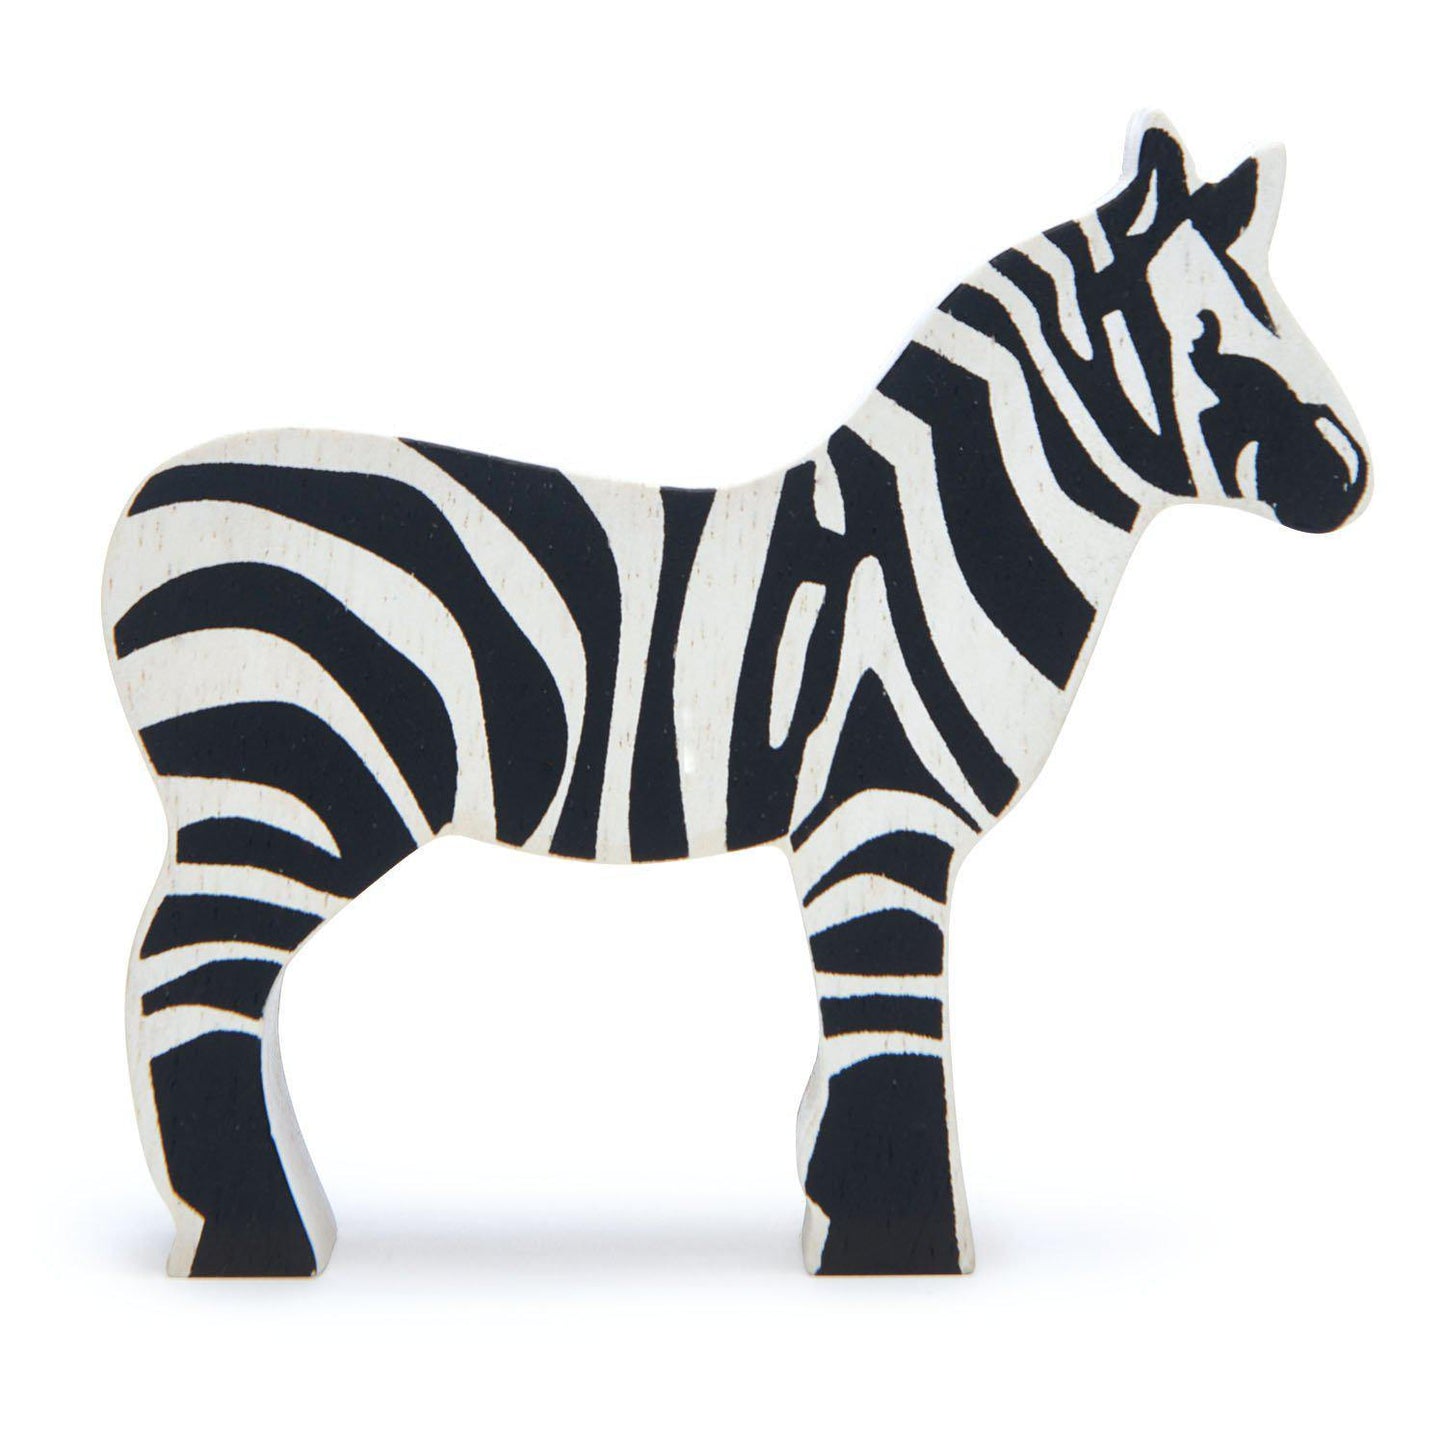 Zebra, prémium minőségű fából - Zebra - Tender Leaf Toys-Tender Leaf Toys-1-Játszma.ro - A maradandó élmények boltja